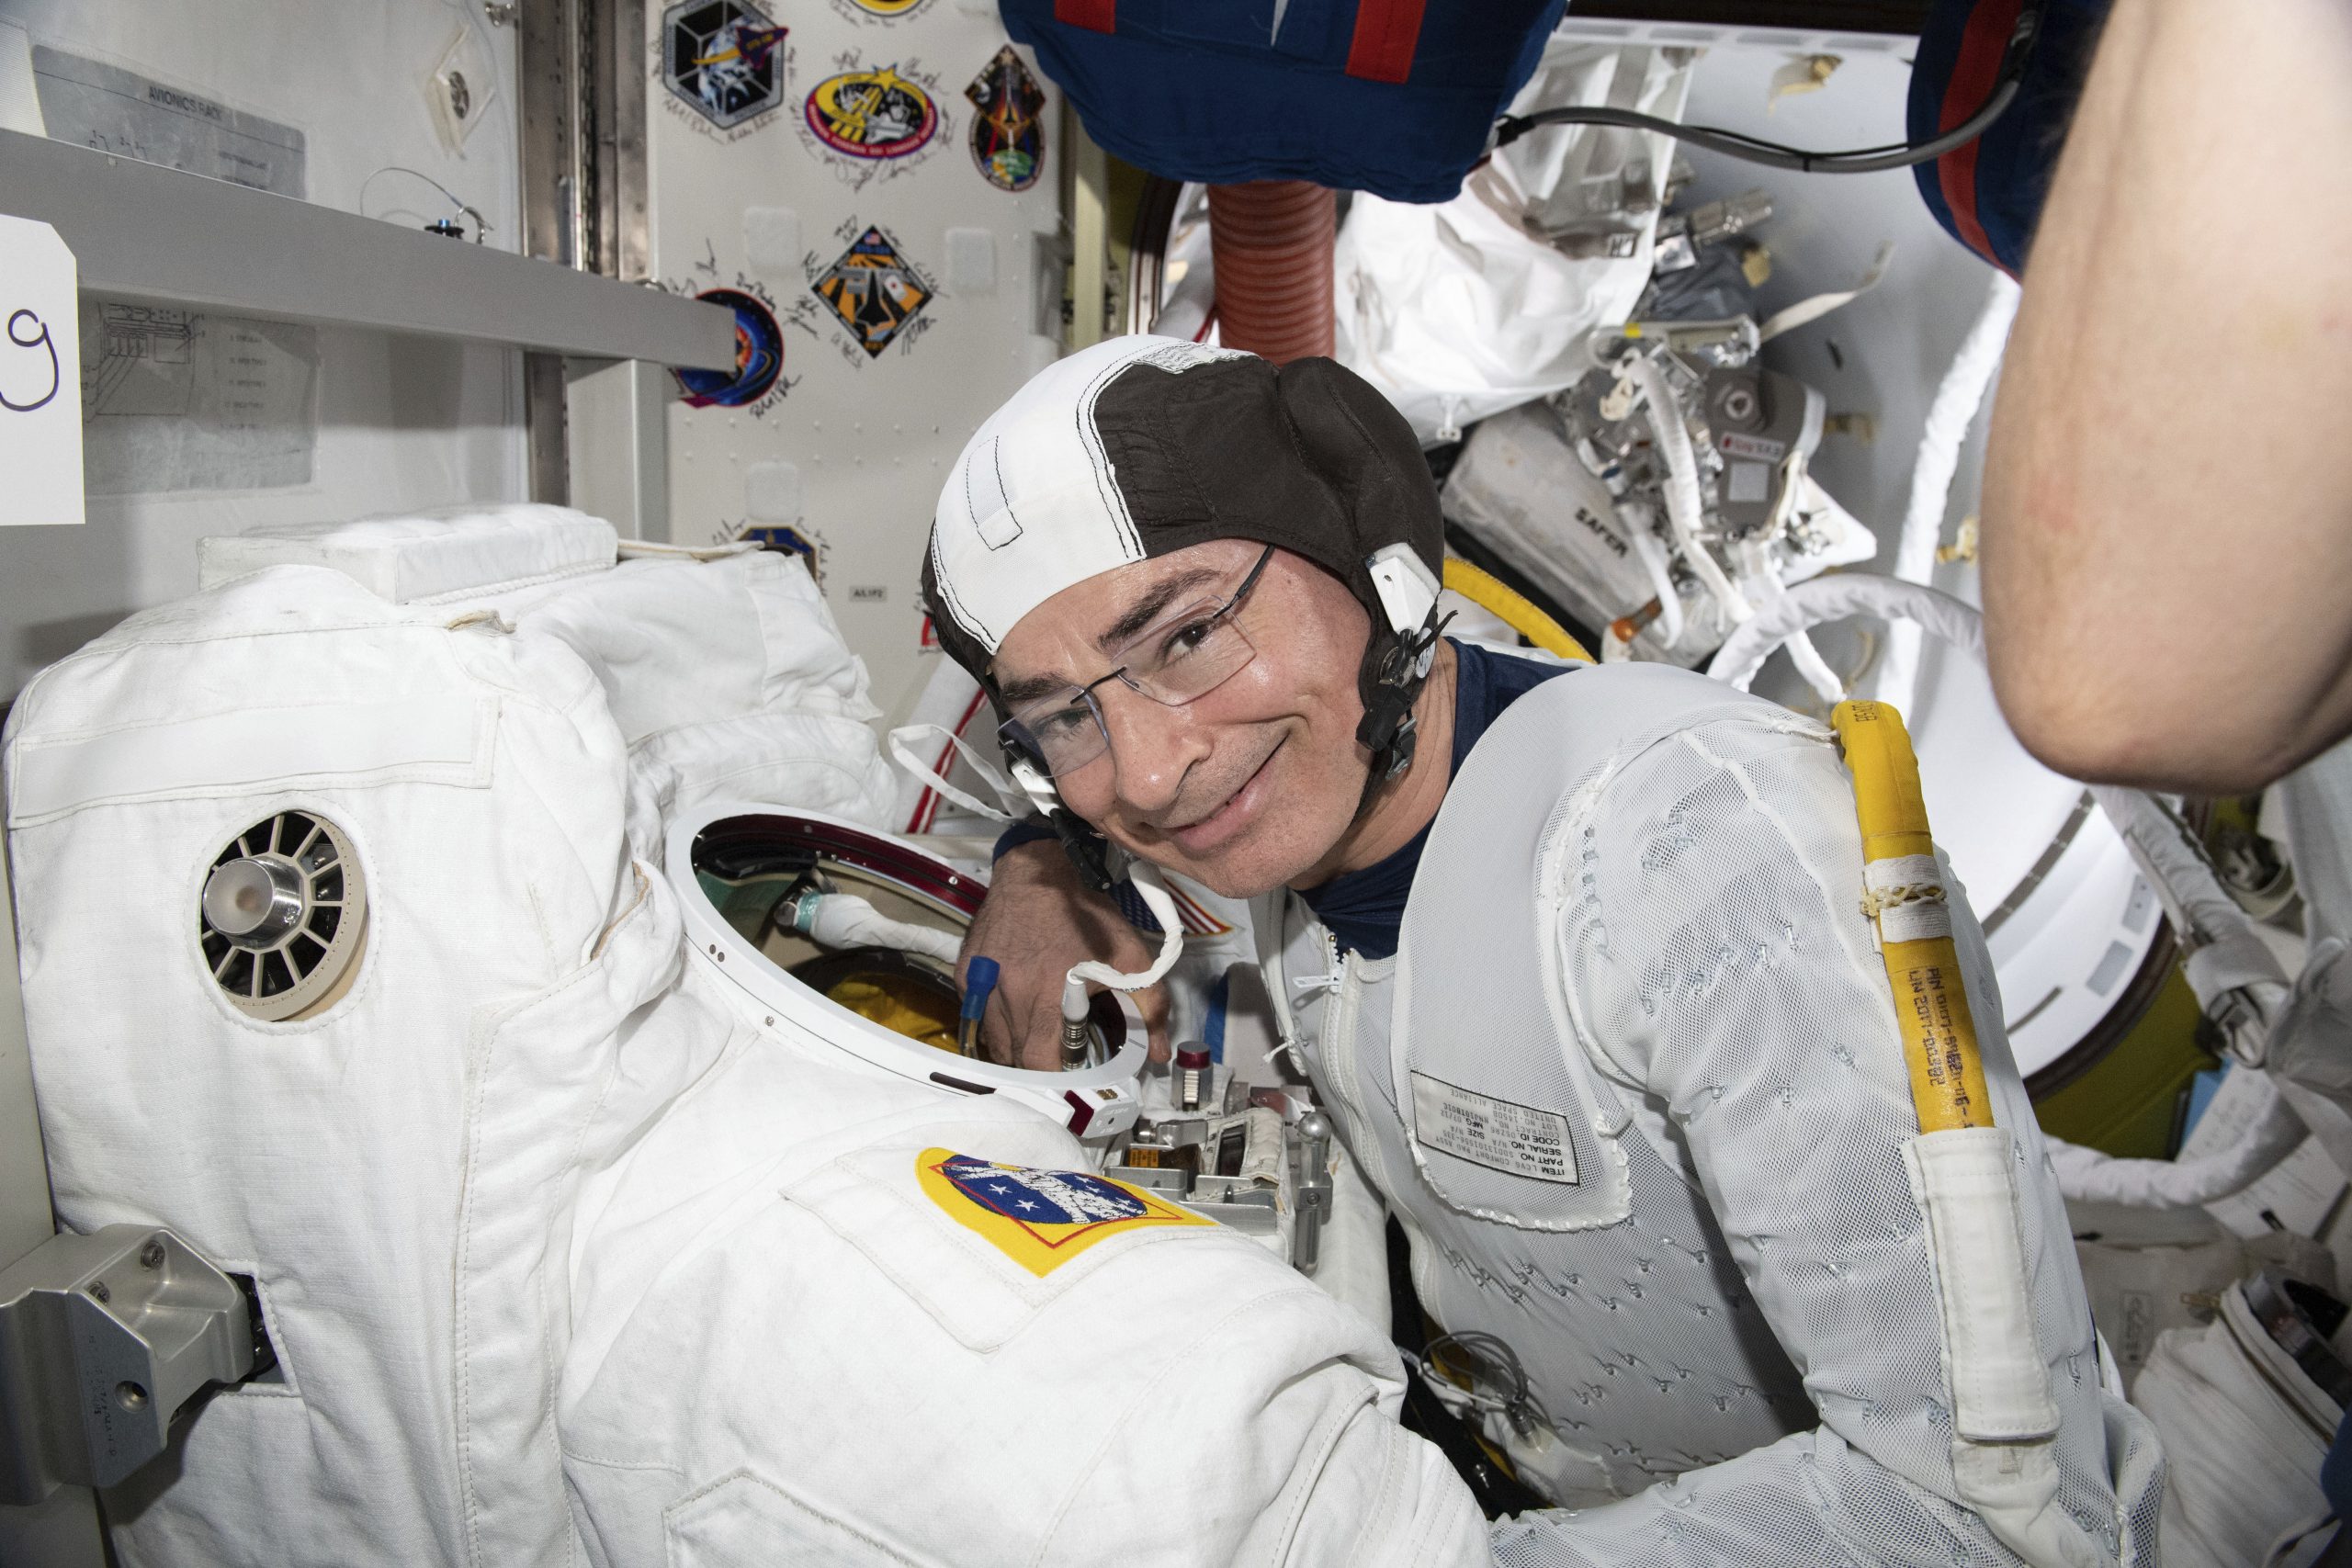  看世界 8 美俄太空人将一同乘坐飞船从国际太空站返回地球